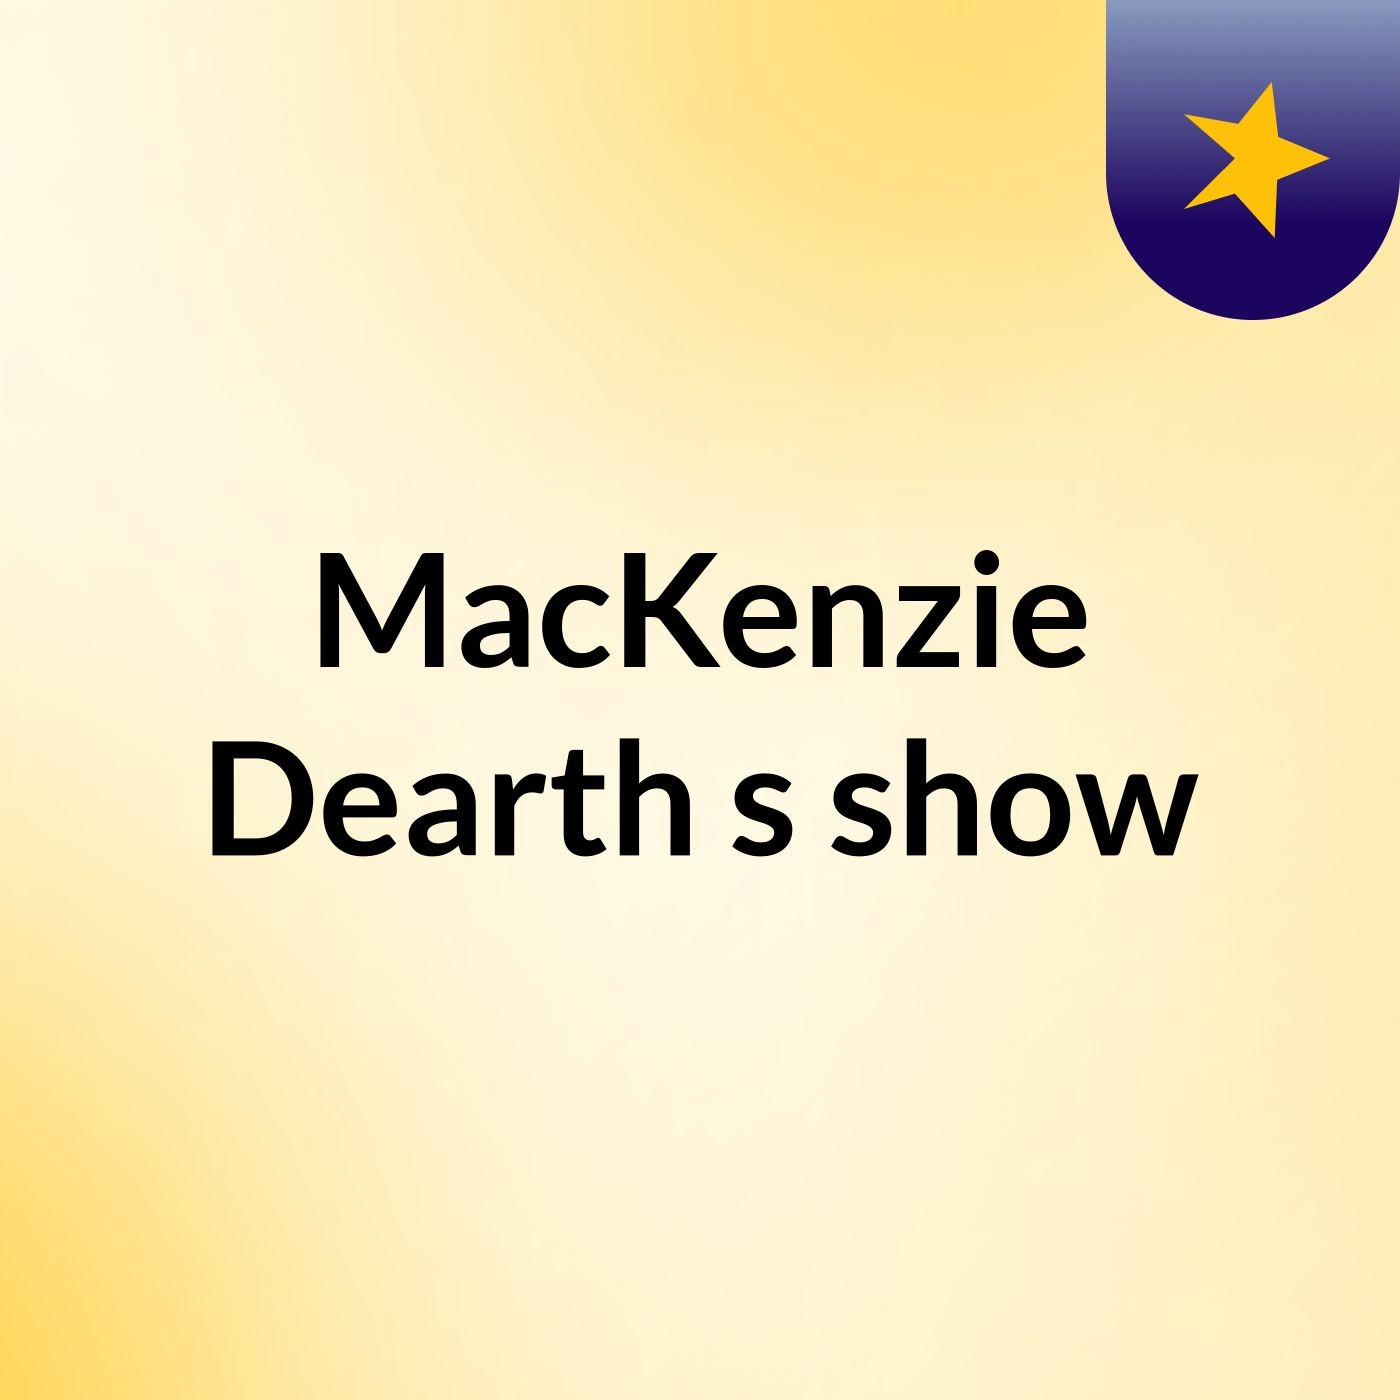 MacKenzie Dearth's show